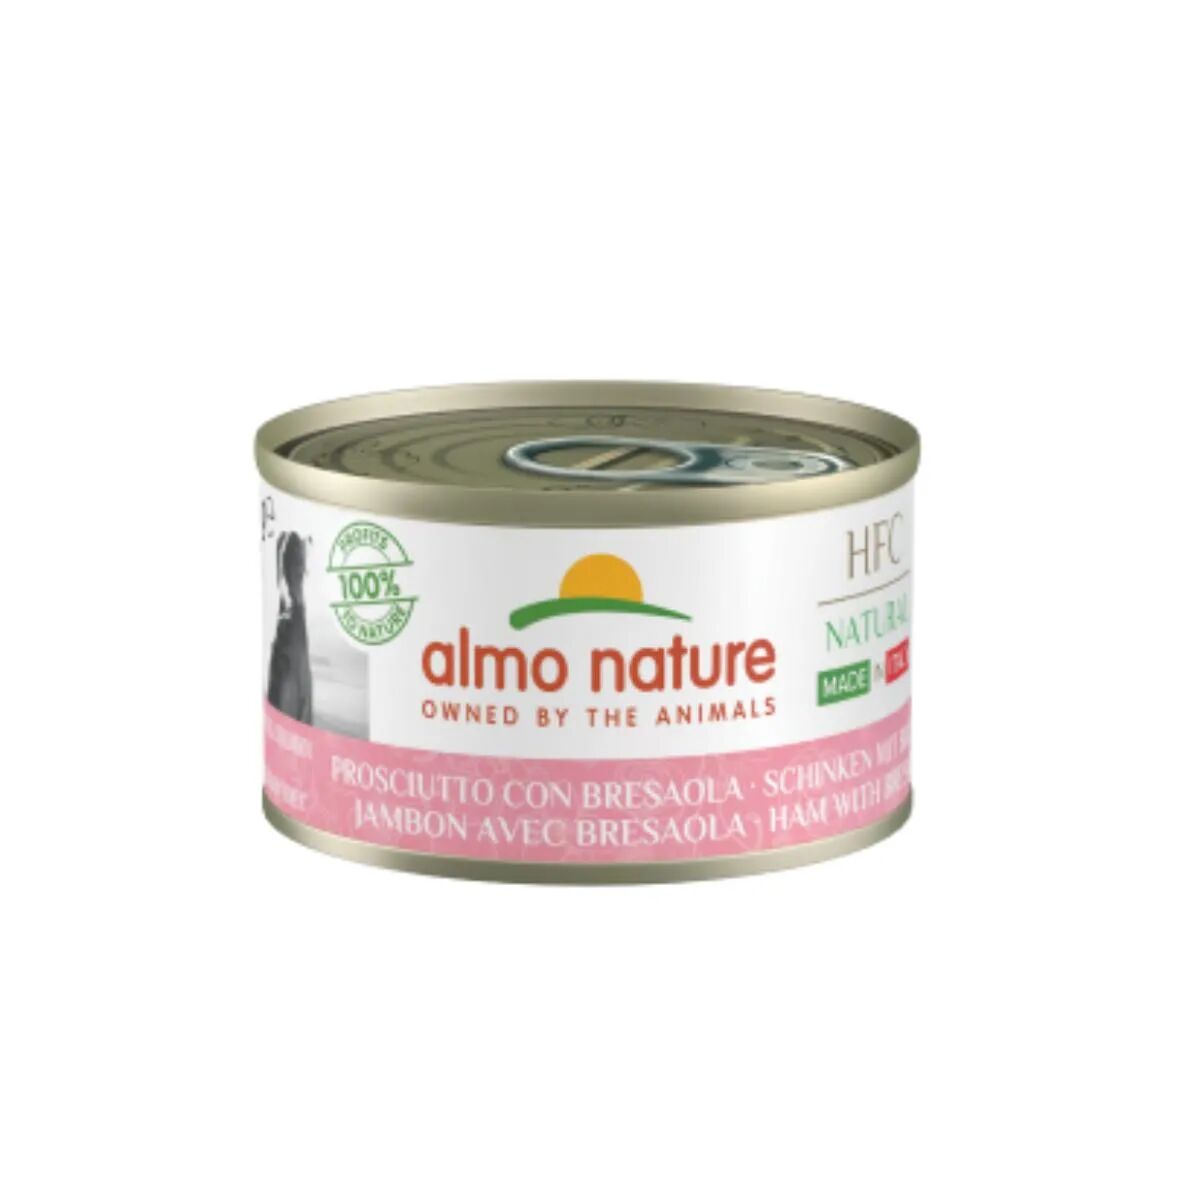 almo nature hfc made in italy dog lattina multipack 24x95g prosciutto con bresaola